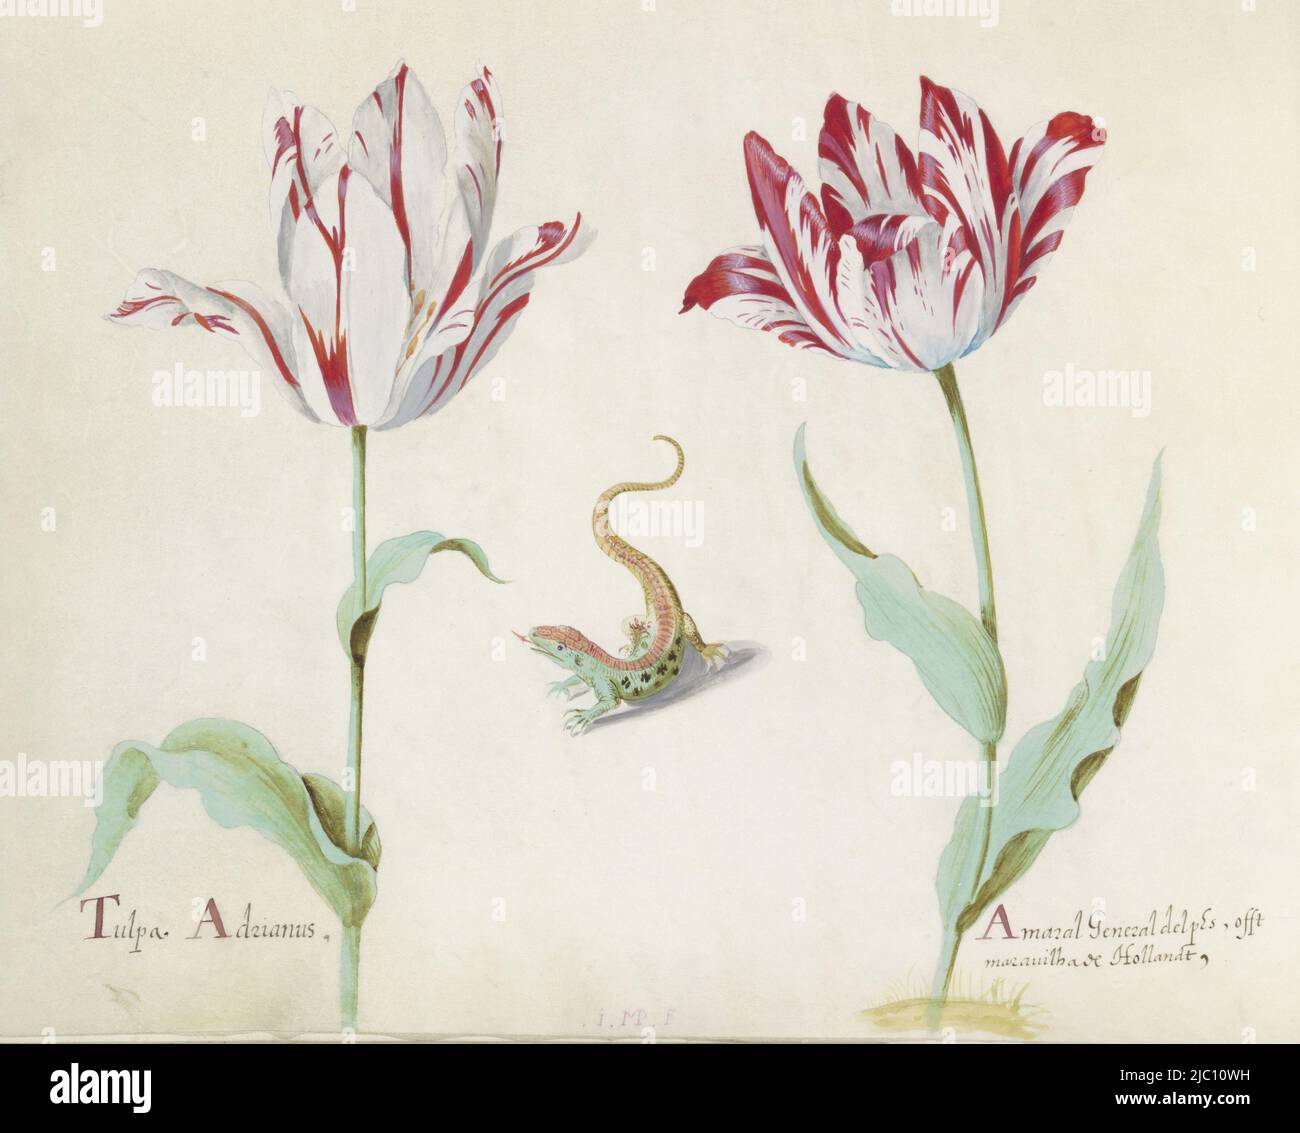 Le dessin fait partie d'un album, deux tulipes avec salamandre Tulpa Adrian / Amaral général delphes (...), dessinateur: Jacob Marrel, (mentionné sur l'objet), 1637, parchemin (matériel animal), brosse, h 265 mm × l 335 mm Banque D'Images